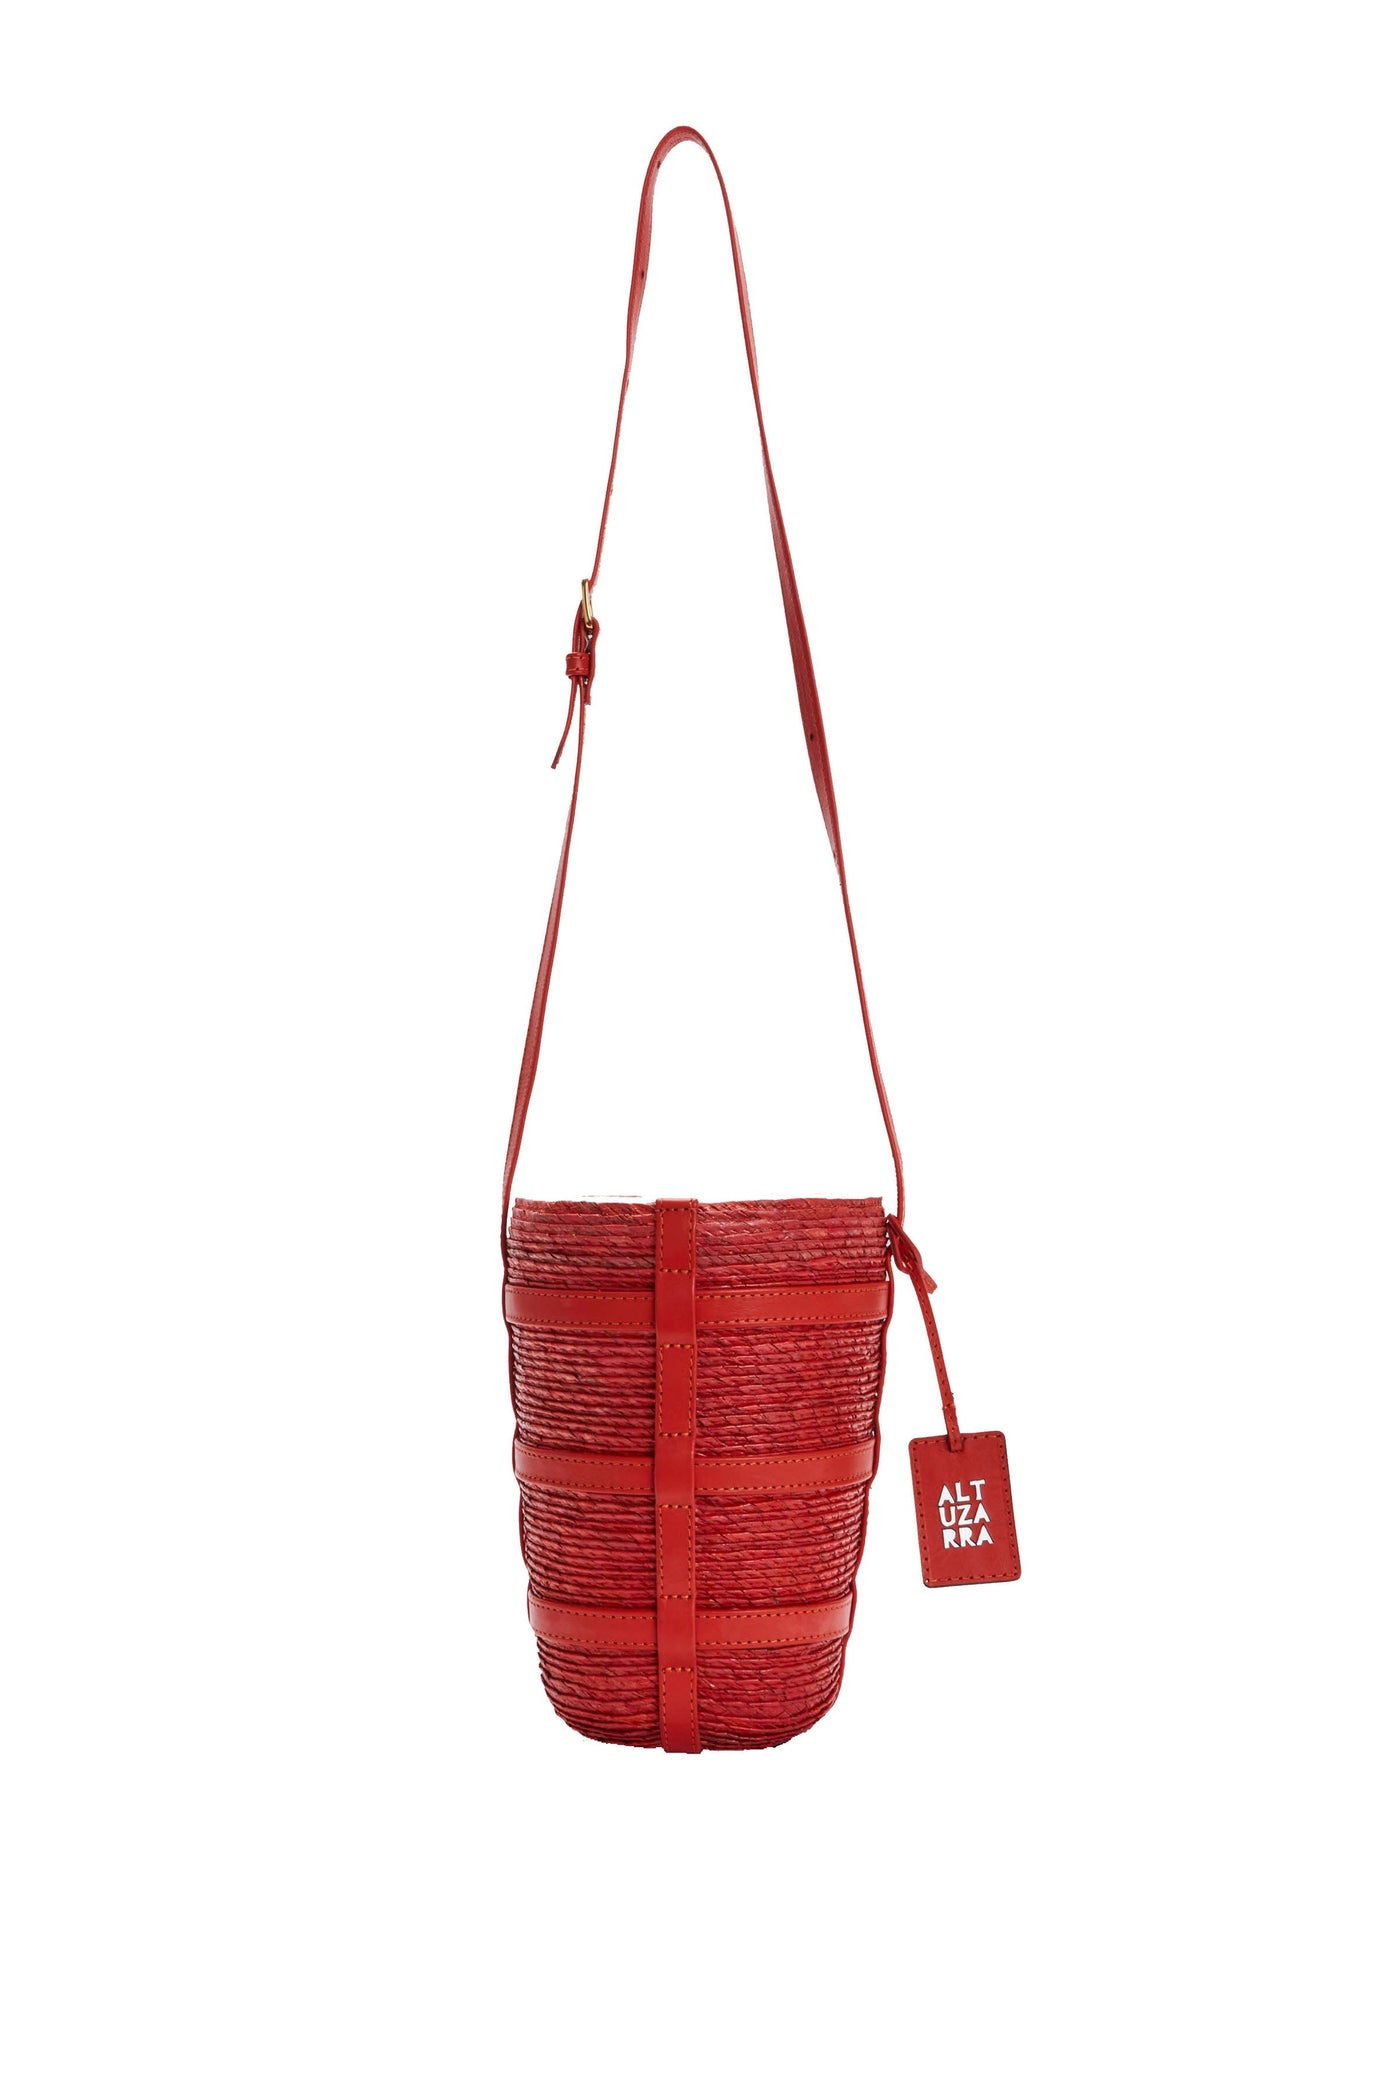 Altuzarra Red Leather Bucket Bag